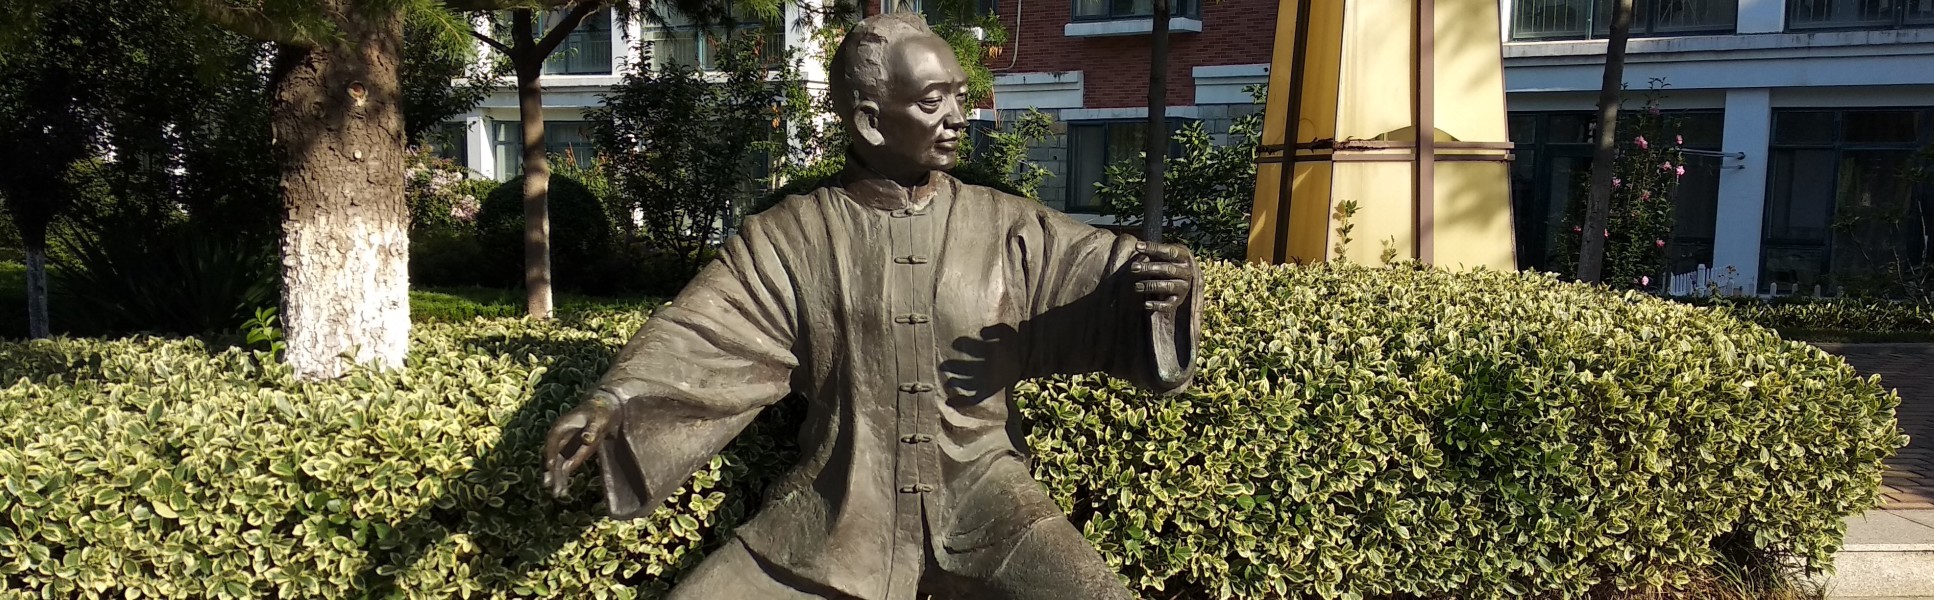 Statue of tai chi